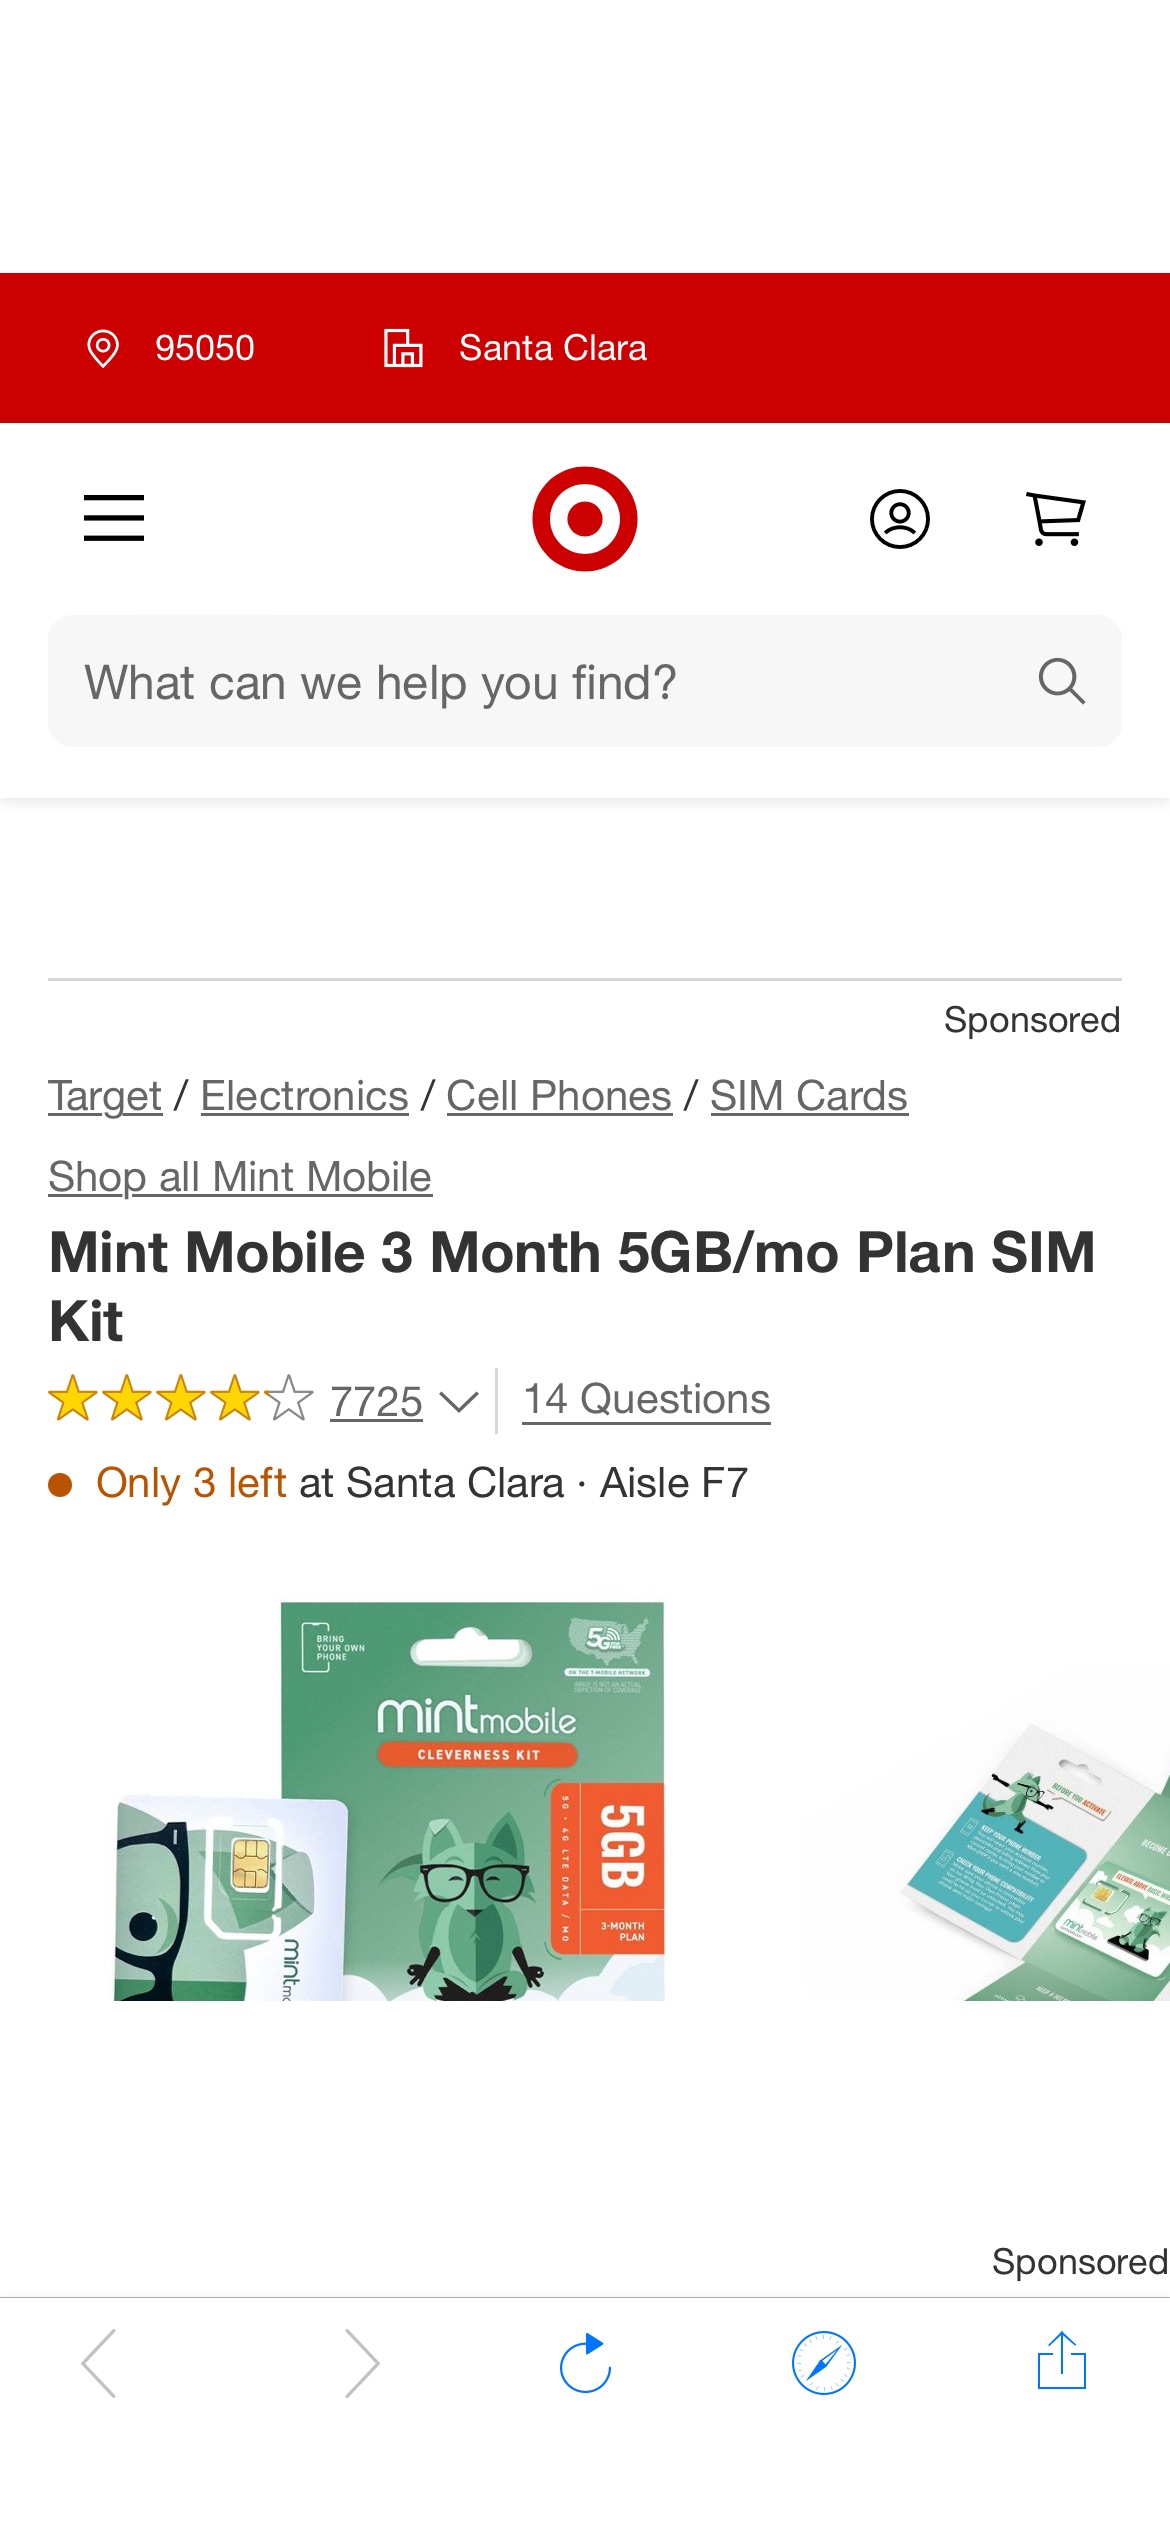 Mint Mobile 3 Month 5gb/mo Plan Sim Kit : Target